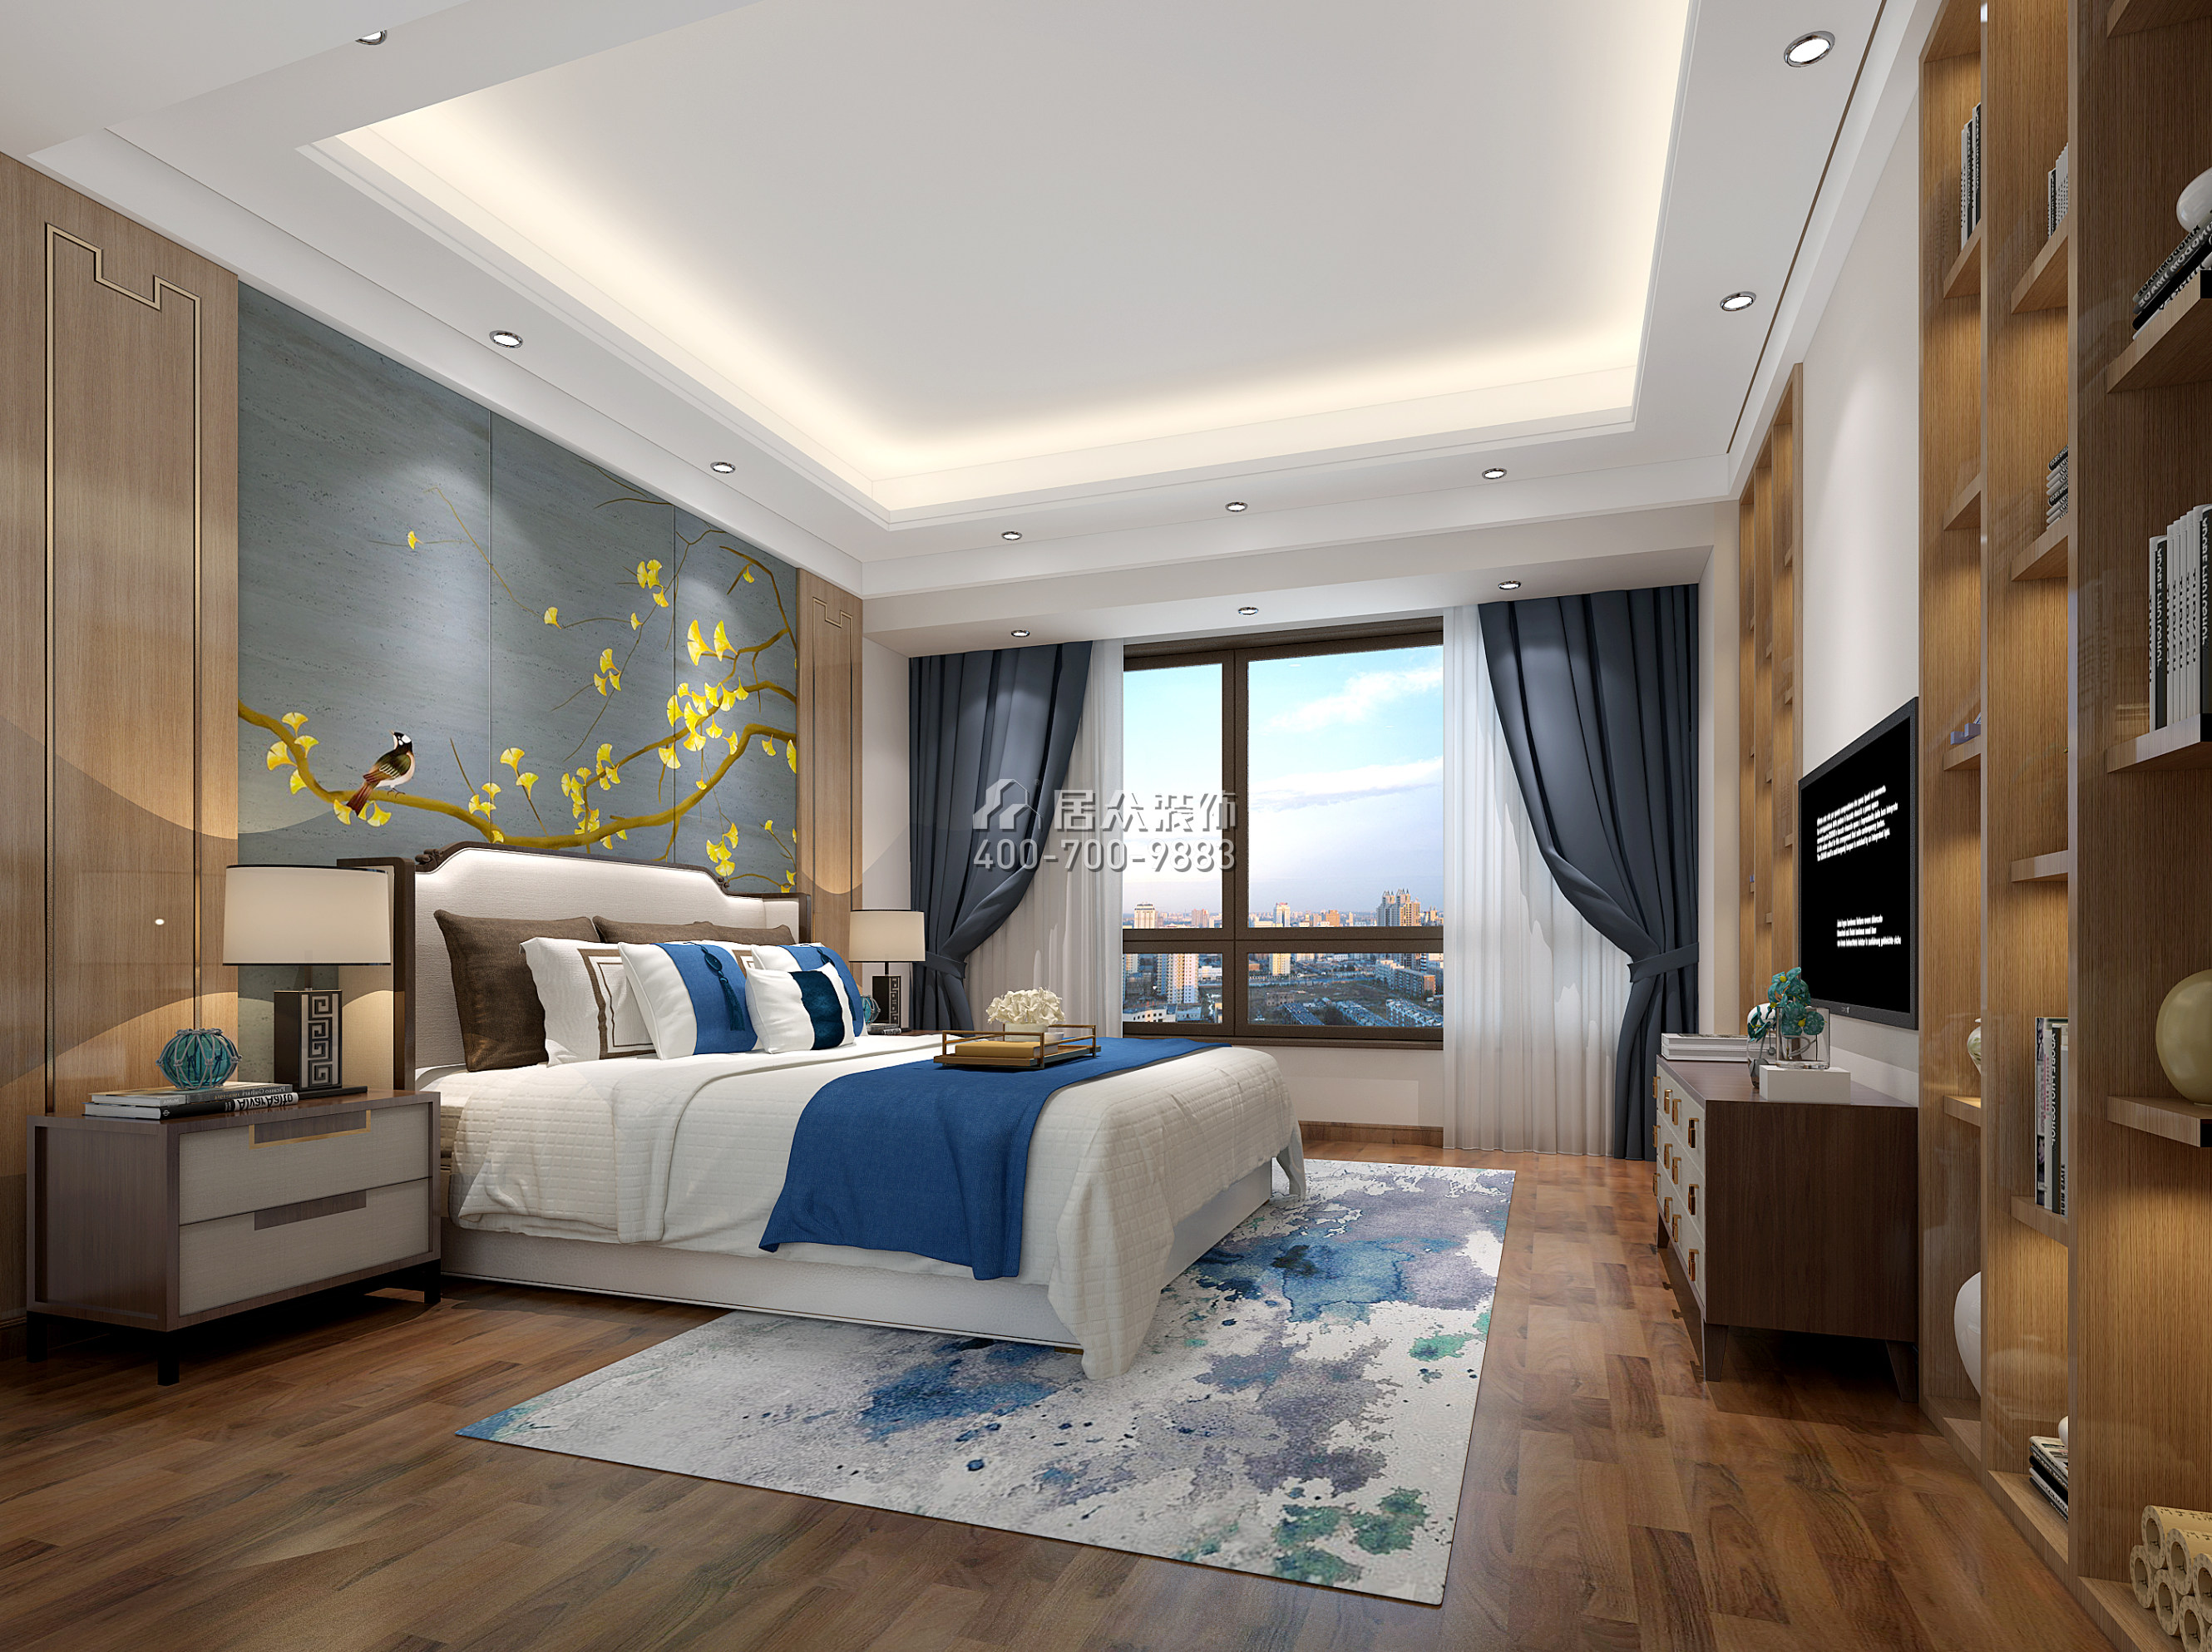 星河丹堤242平方米中式風格復式戶型臥室裝修效果圖